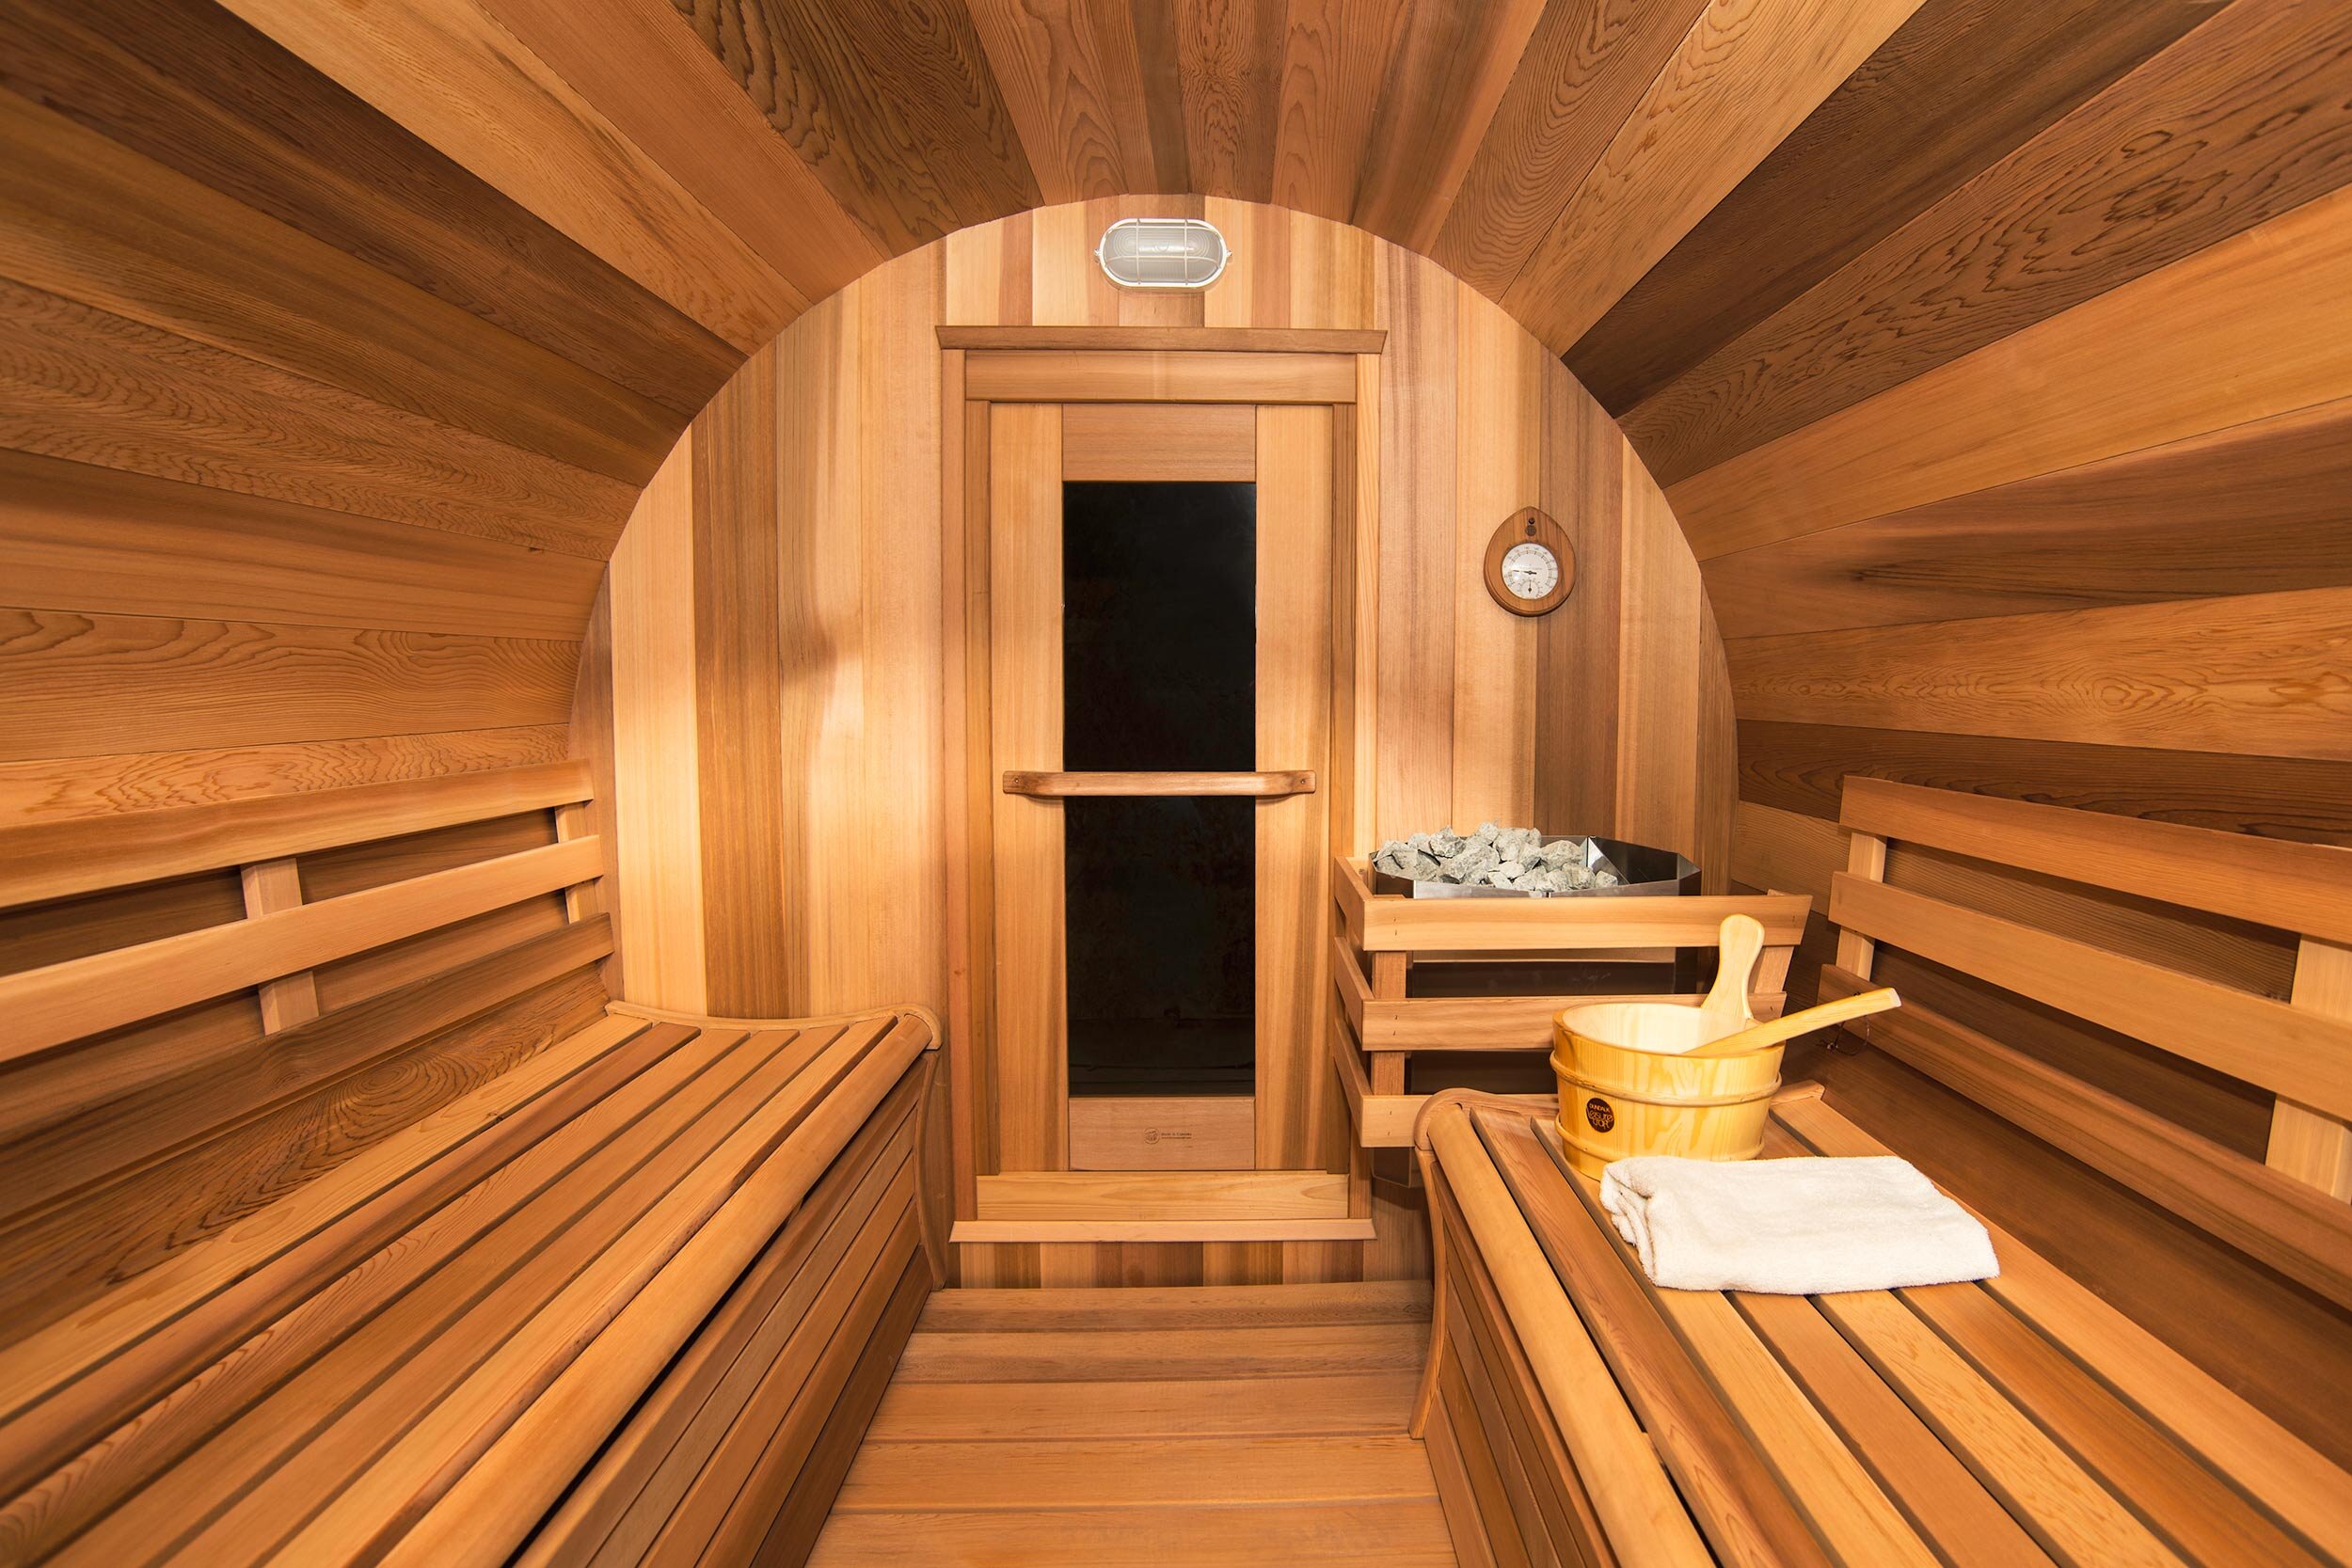 commercial-photography-cedar-sauna-interior-photographer-paul-george.jpg